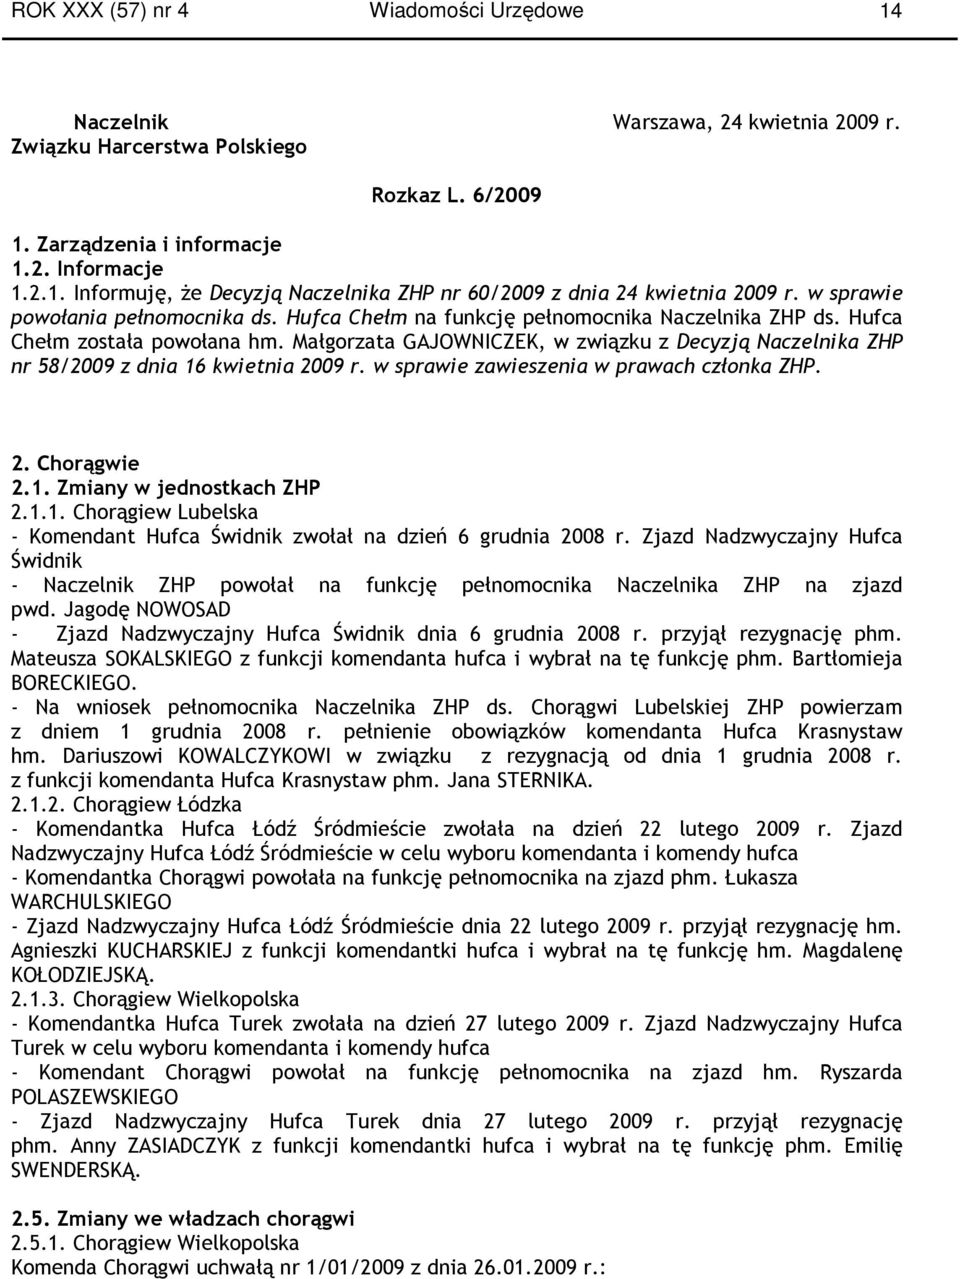 Małgorzata GAJOWNICZEK, w związku z Decyzją a ZHP nr 58/2009 z dnia 16 kwietnia 2009 r. w sprawie zawieszenia w prawach członka ZHP. 2. Chorągwie 2.1. Zmiany w jednostkach ZHP 2.1.1. Chorągiew Lubelska - Komendant Hufca Świdnik zwołał na dzień 6 grudnia 2008 r.